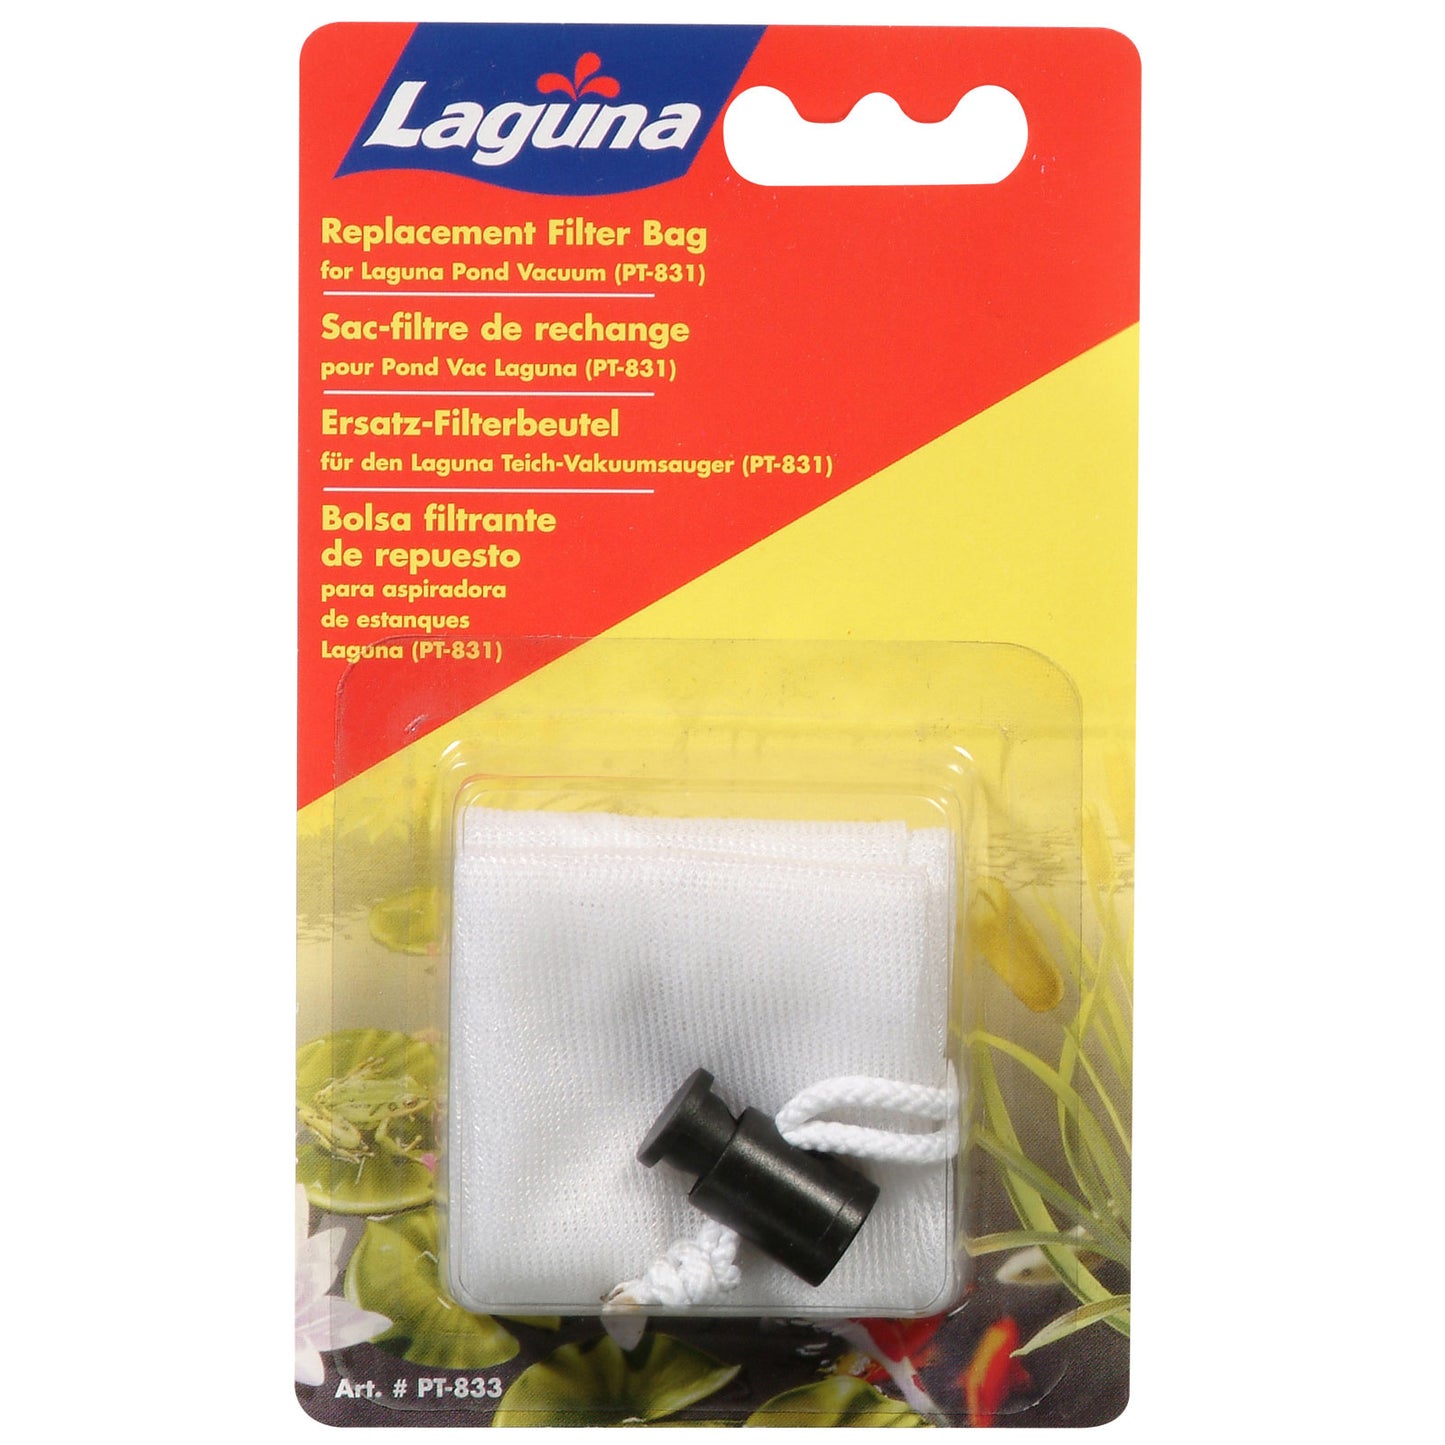 Laguna Replacement Vacuum Bag, 31.5 x 15 cm (12.5” x 6”)